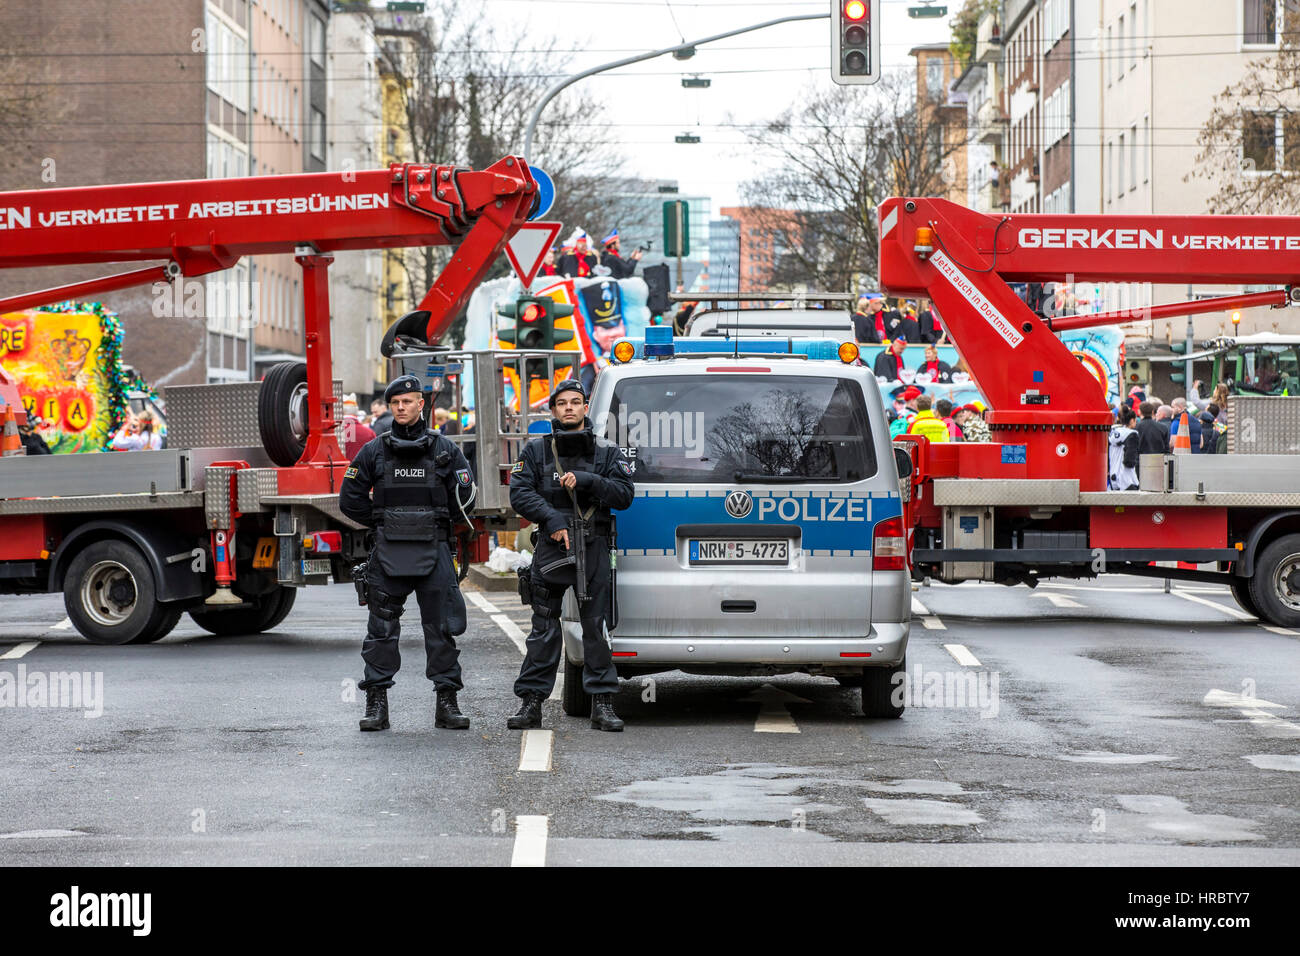 Défilé de carnaval allemand à Düsseldorf, les officiers de police fixent la parade, bloquant les routes avec les camions, contre des attaques terroristes avec des véhicules équipés, Banque D'Images